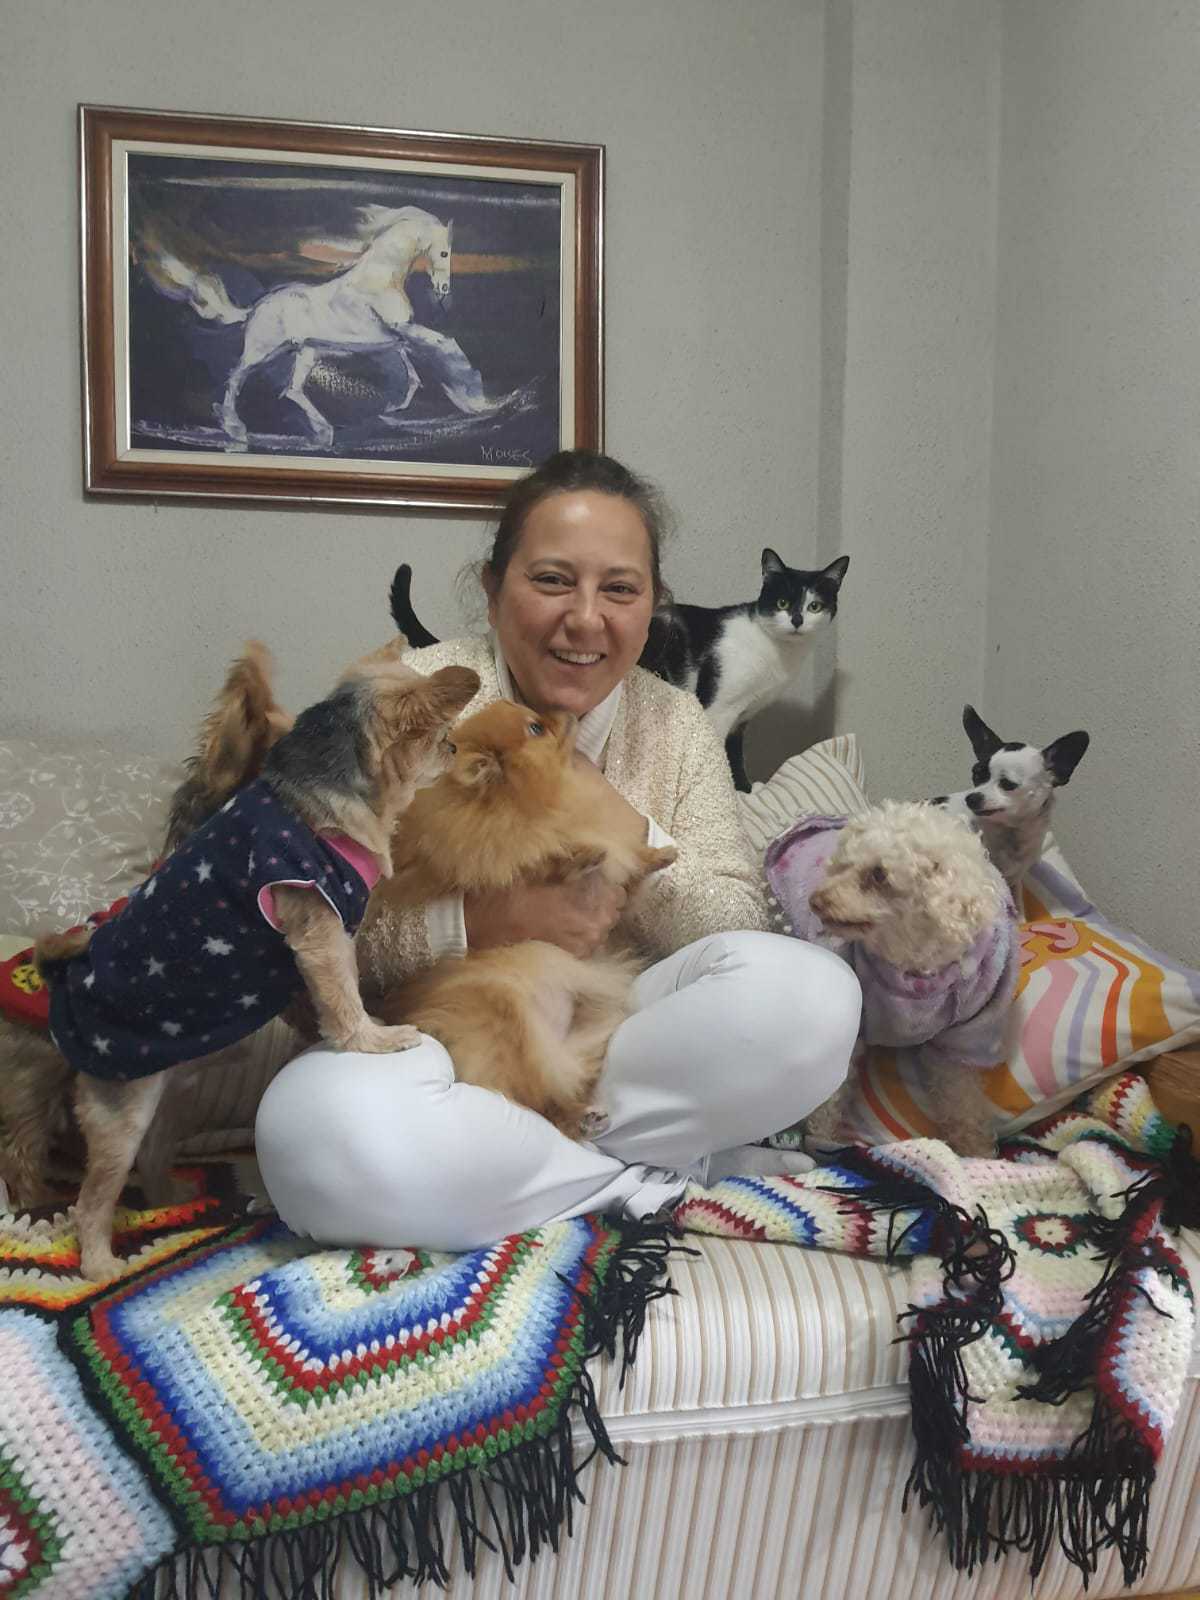 Na imagem, Carina está sentada em um sofá, coberto por uma manta colorida, rodeada por cinco cachorros e um gato. Ela veste uma roupa em tons branco e bege. Atrás dela, há um quadro com a pintura de um cavalo